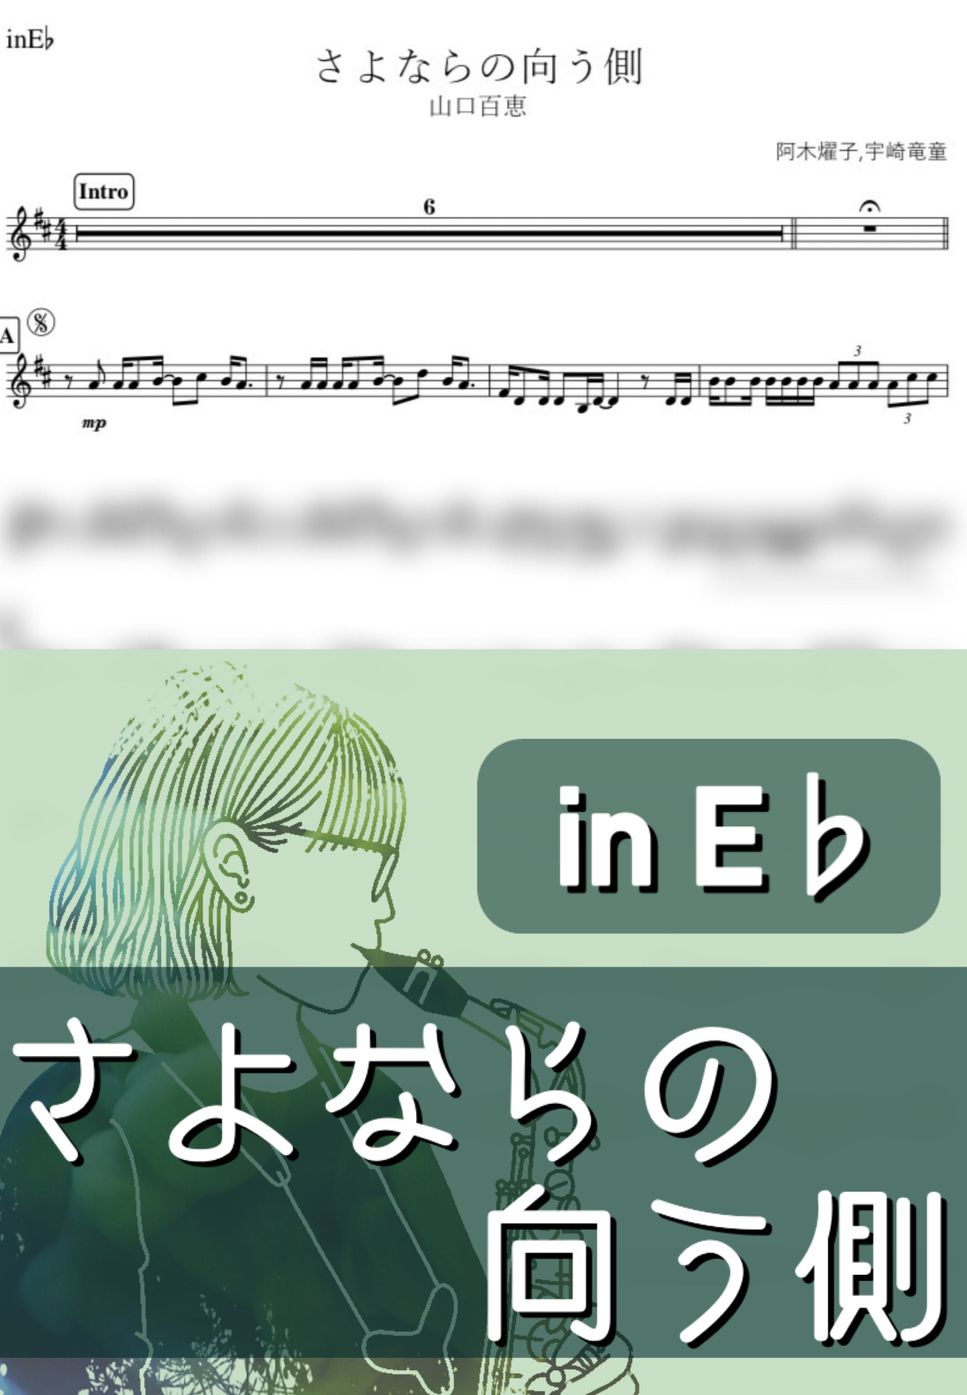 山口百恵 - さよならの向う側 (E♭) by kanamusic